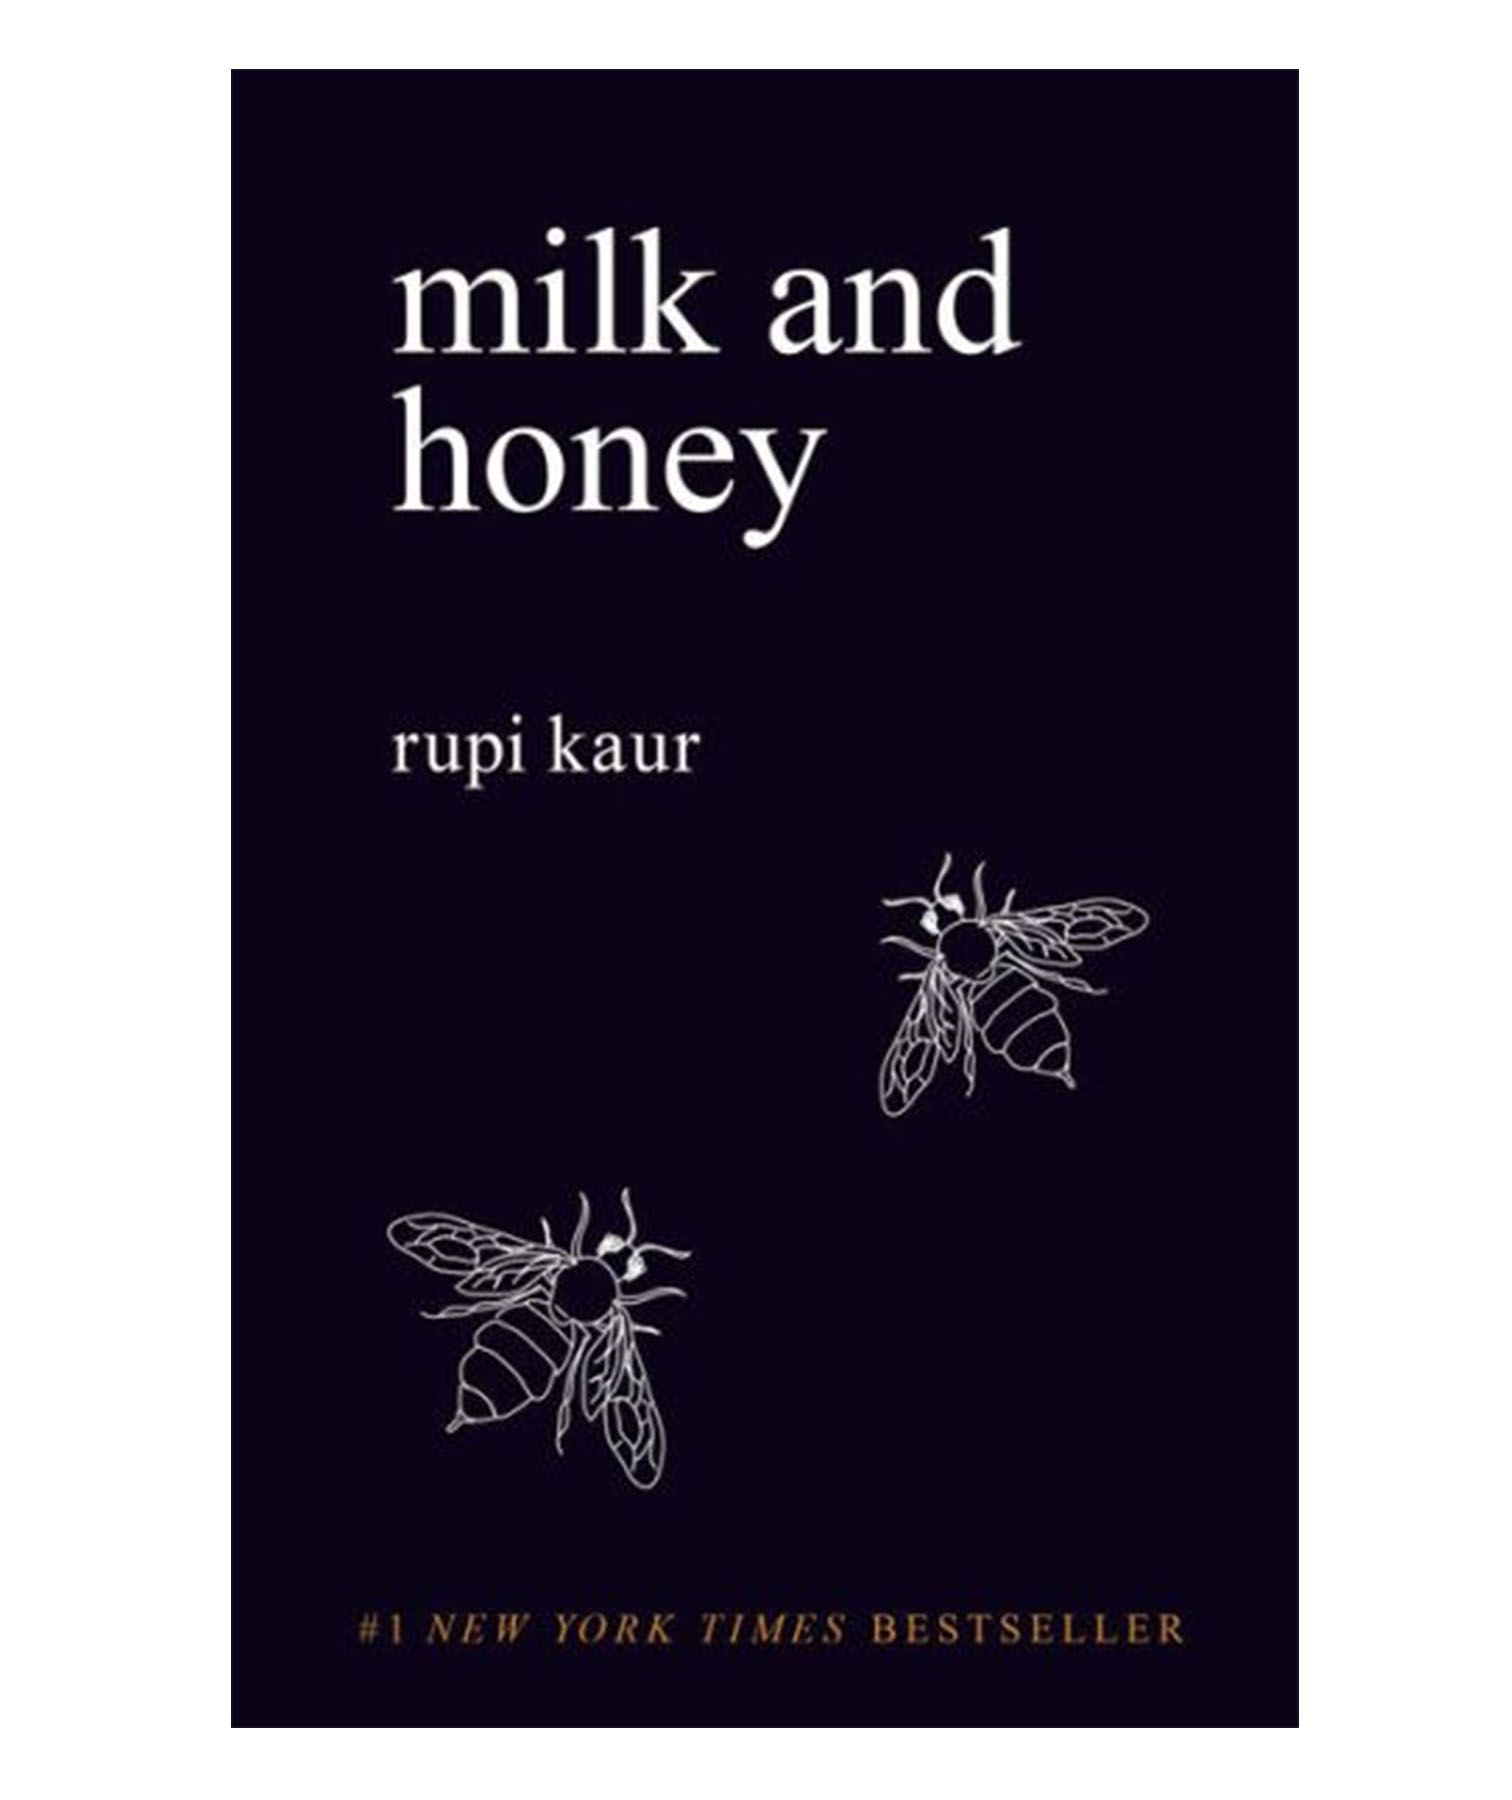 Knjiga o mlijeku i medu